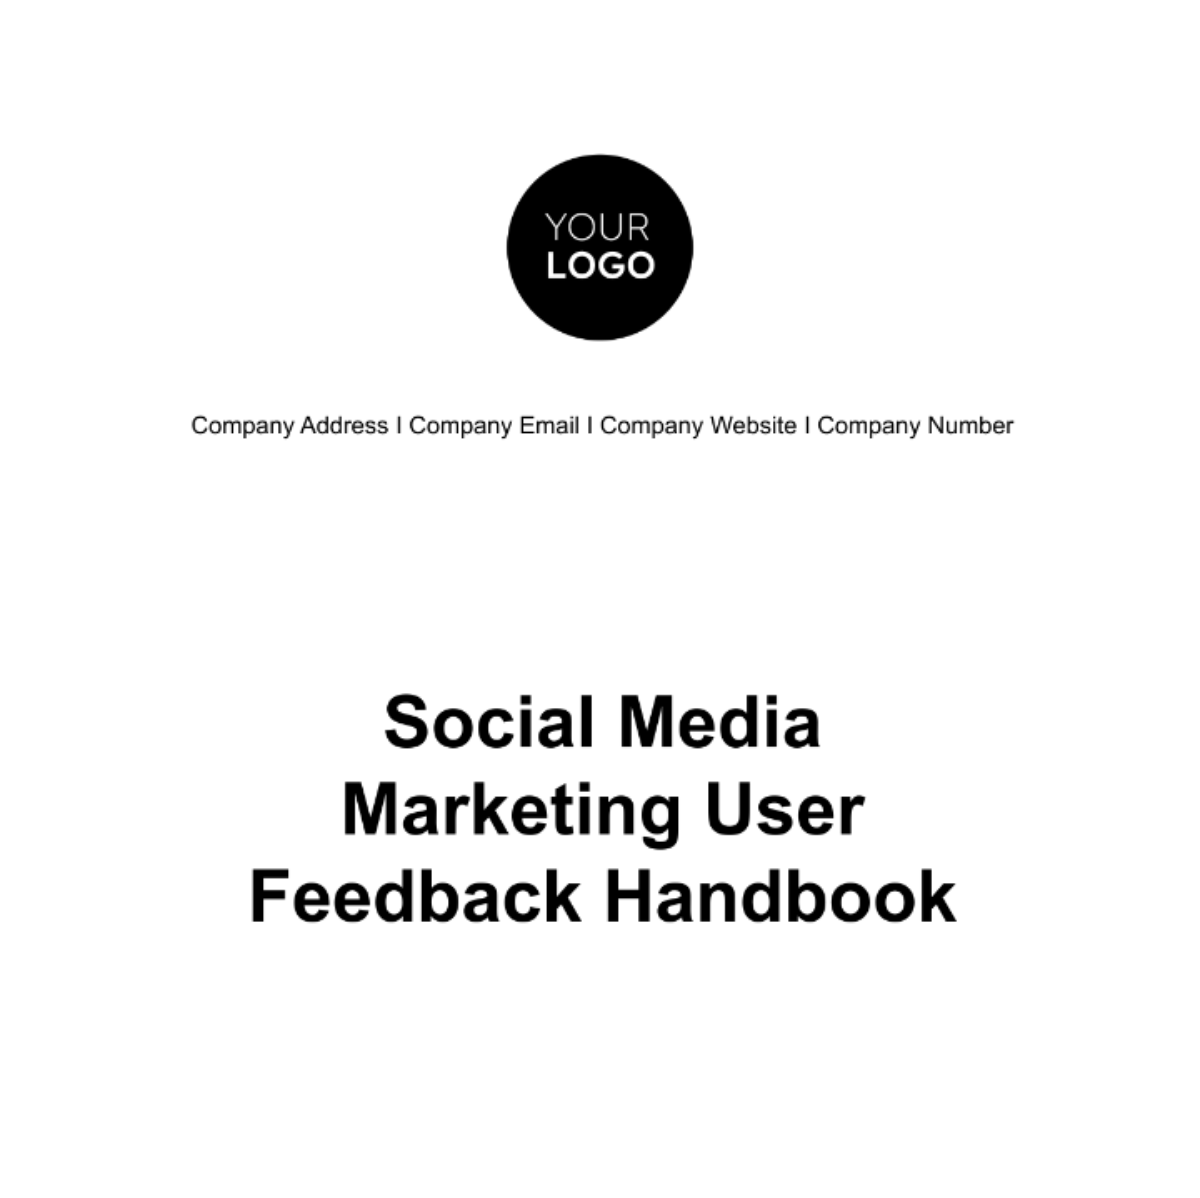 Social Media Marketing User Feedback Handbook Template